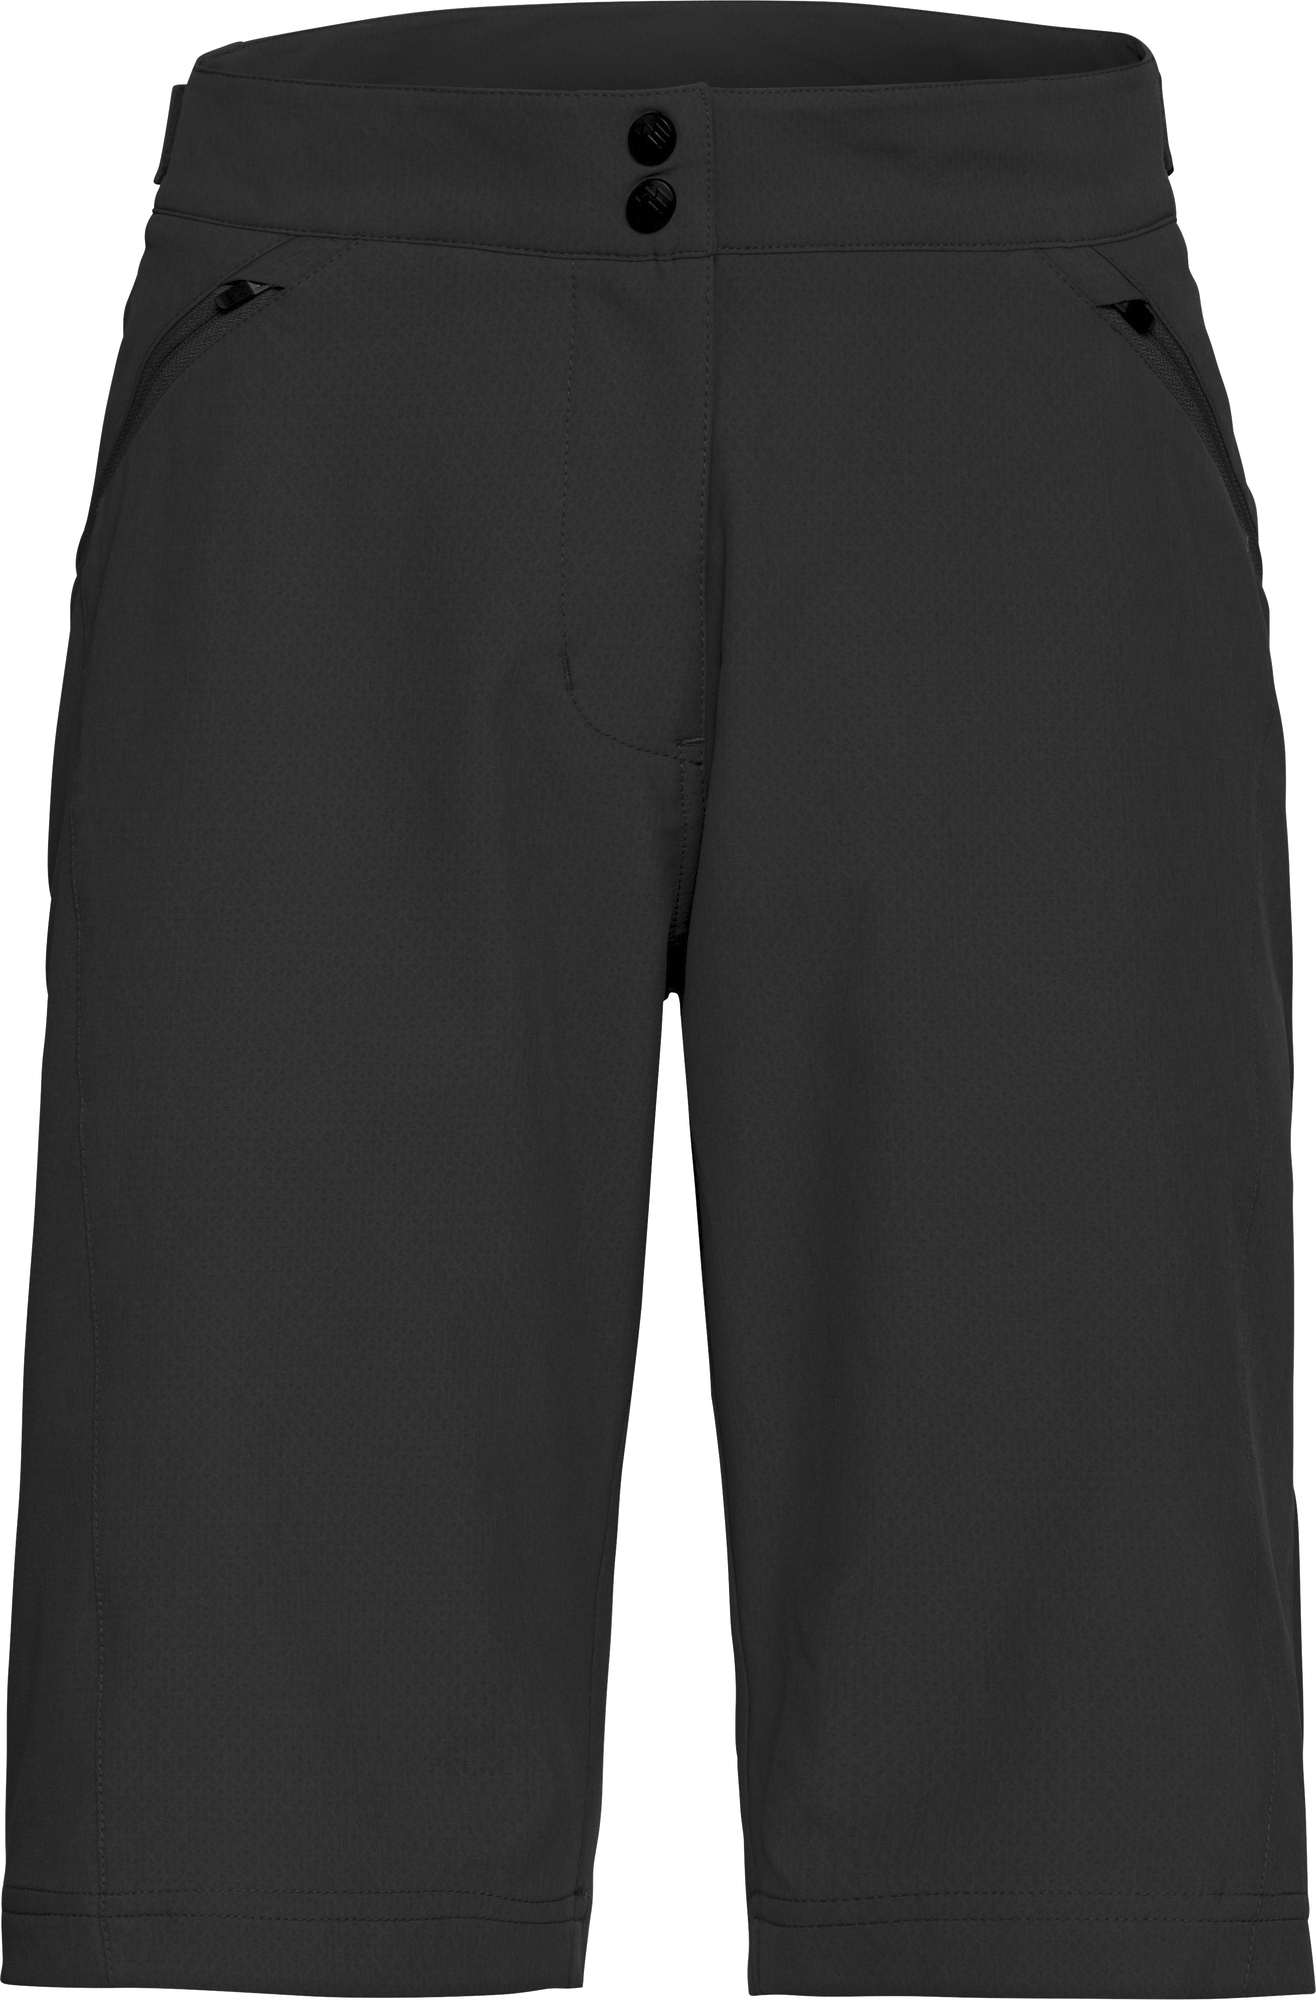 Bekleidung/Hosen: Apura  Damen Shorts Classic S 